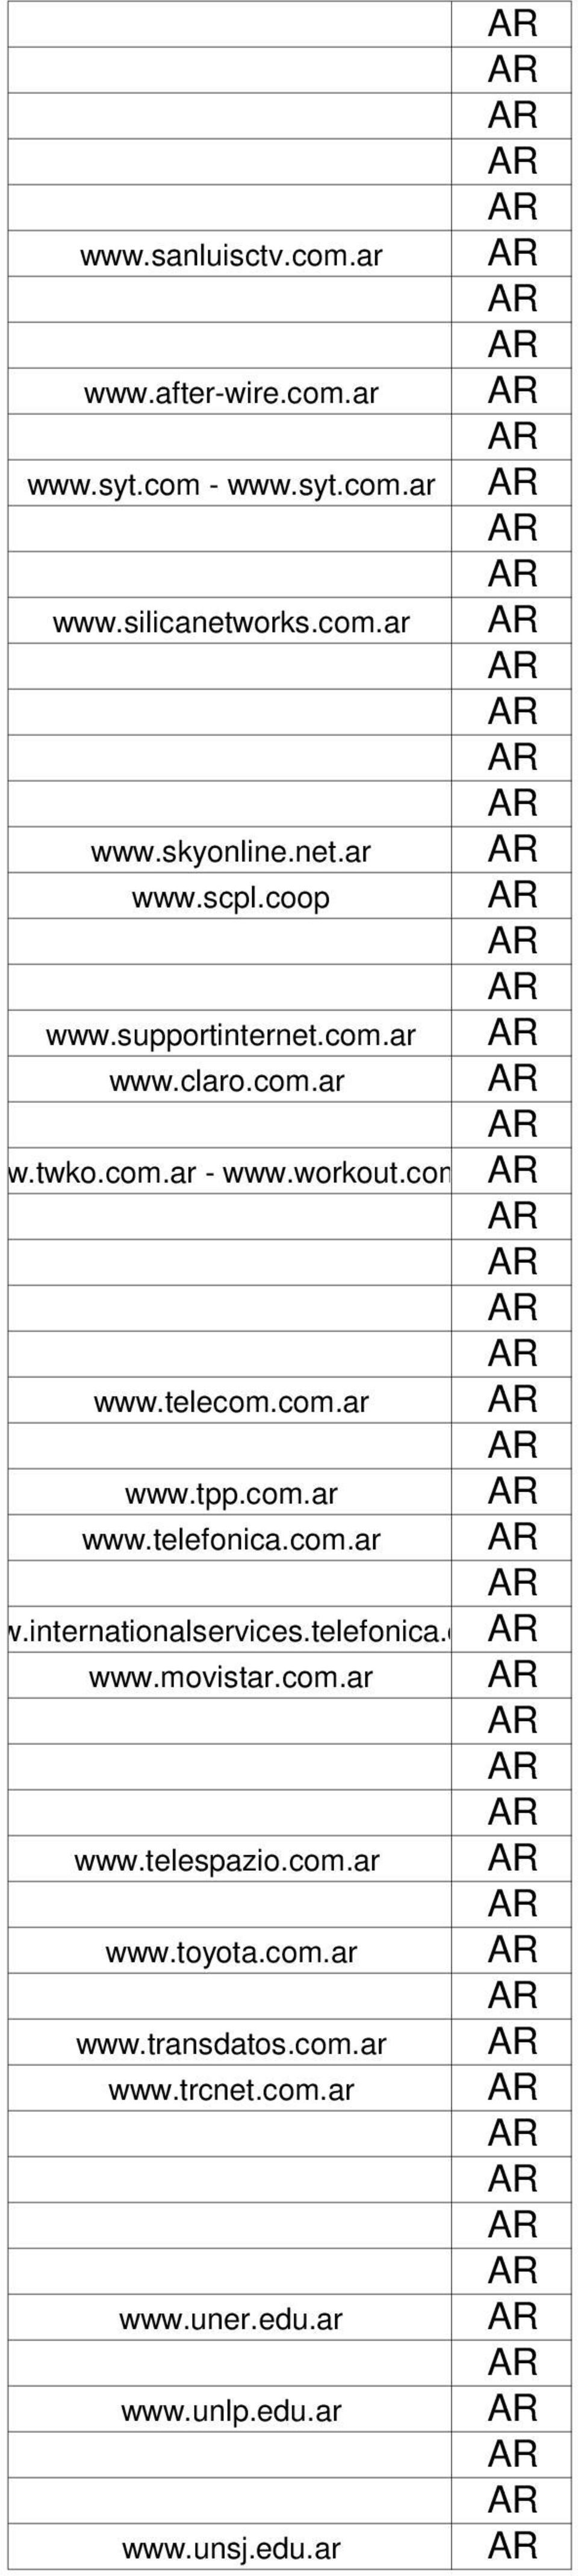 com.ar www.telefonica.com.ar w.internationalservices.telefonica.c www.movistar.com.ar www.telespazio.com.ar www.toyota.